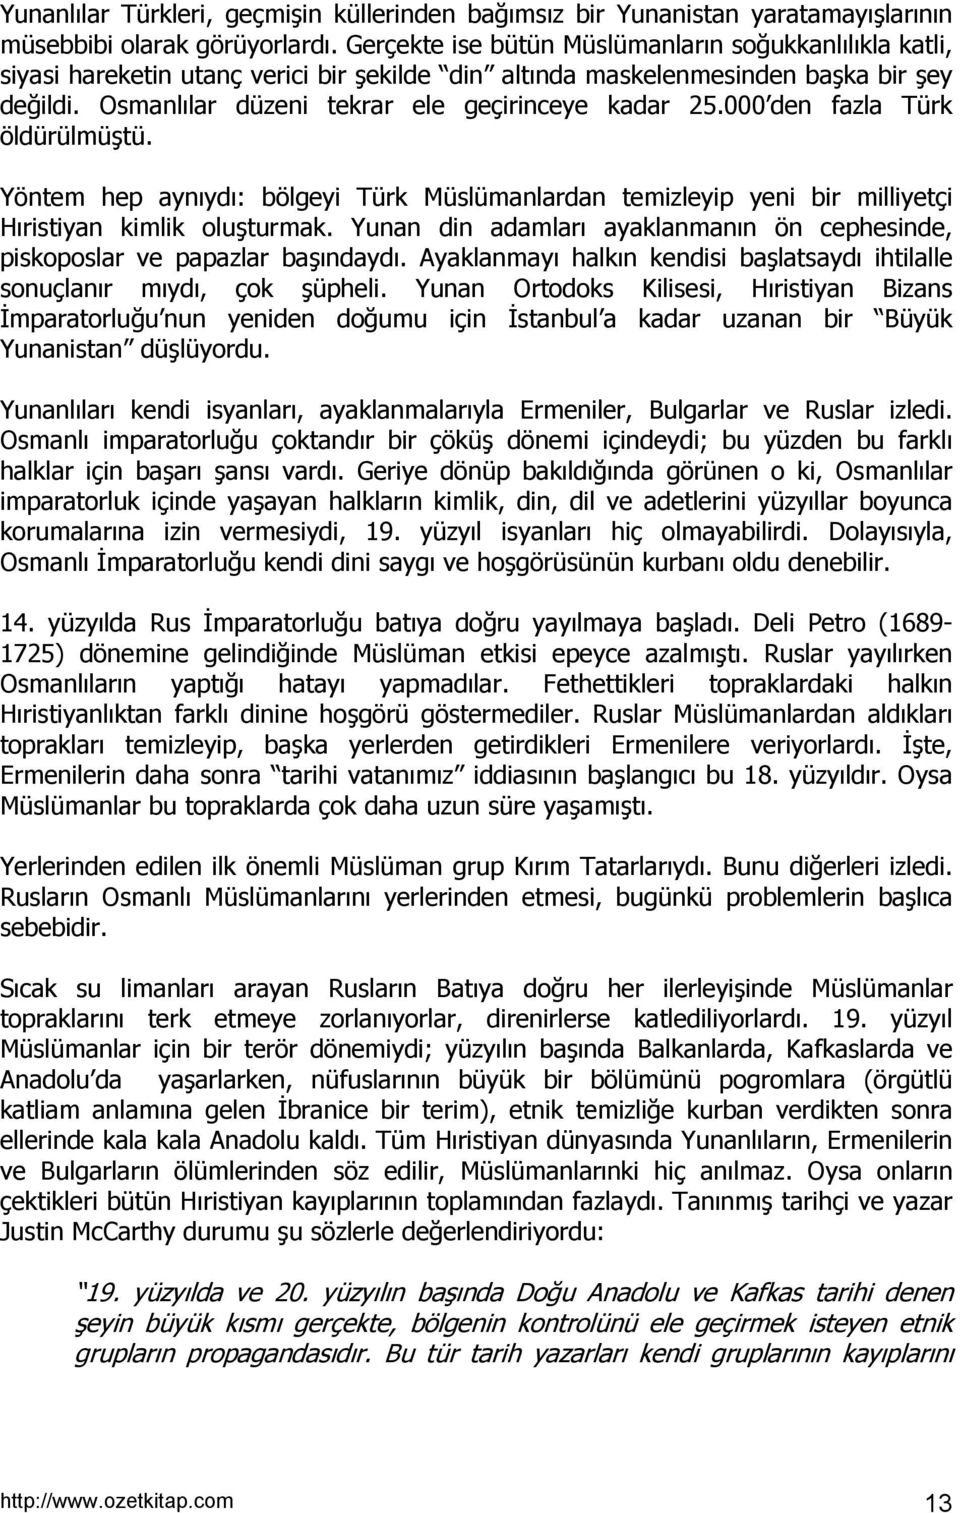 000 den fazla Türk öldürülmüştü. Yöntem hep aynõydõ: bölgeyi Türk Müslümanlardan temizleyip yeni bir milliyetçi Hõristiyan kimlik oluşturmak.